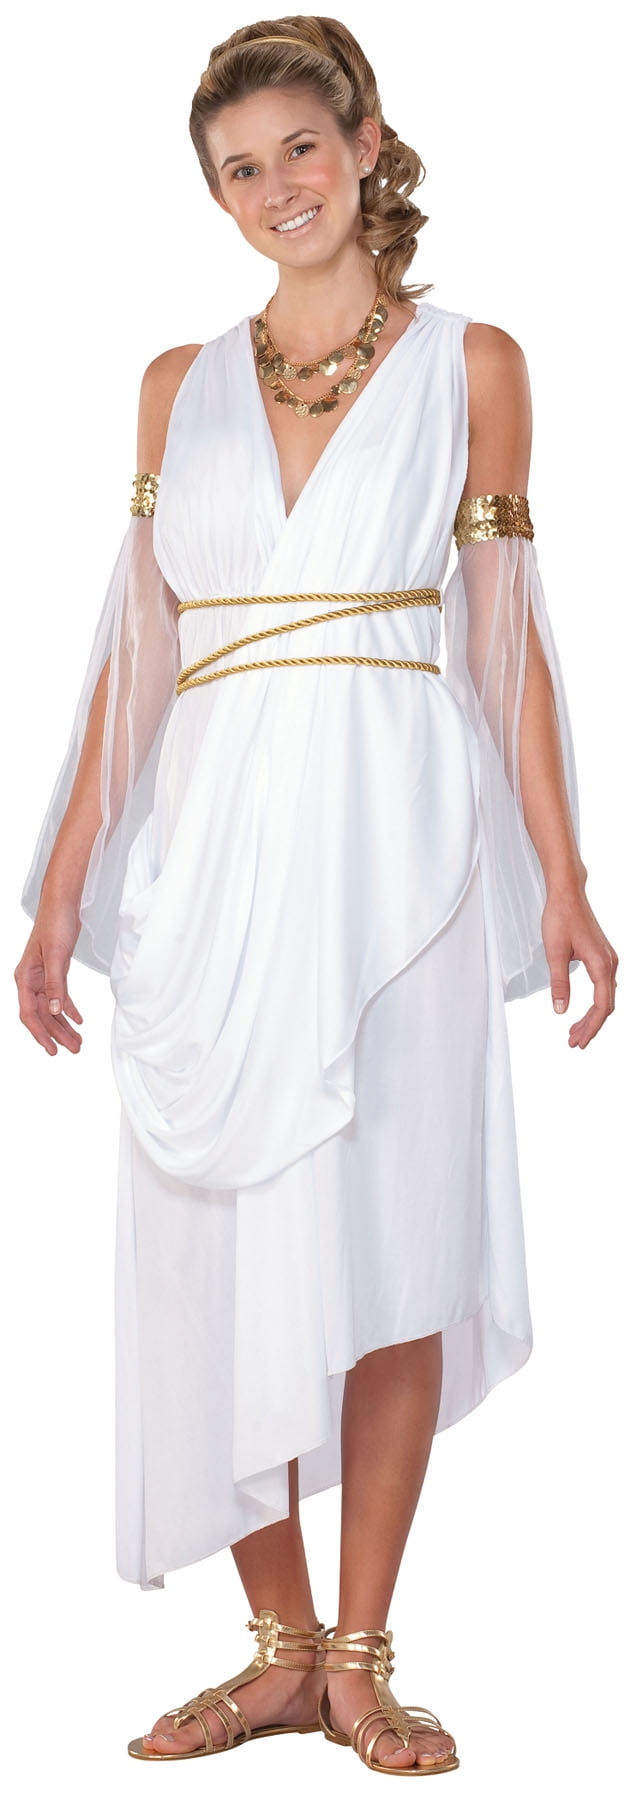 White And Gold Greek Goddess Dress | lupon.gov.ph